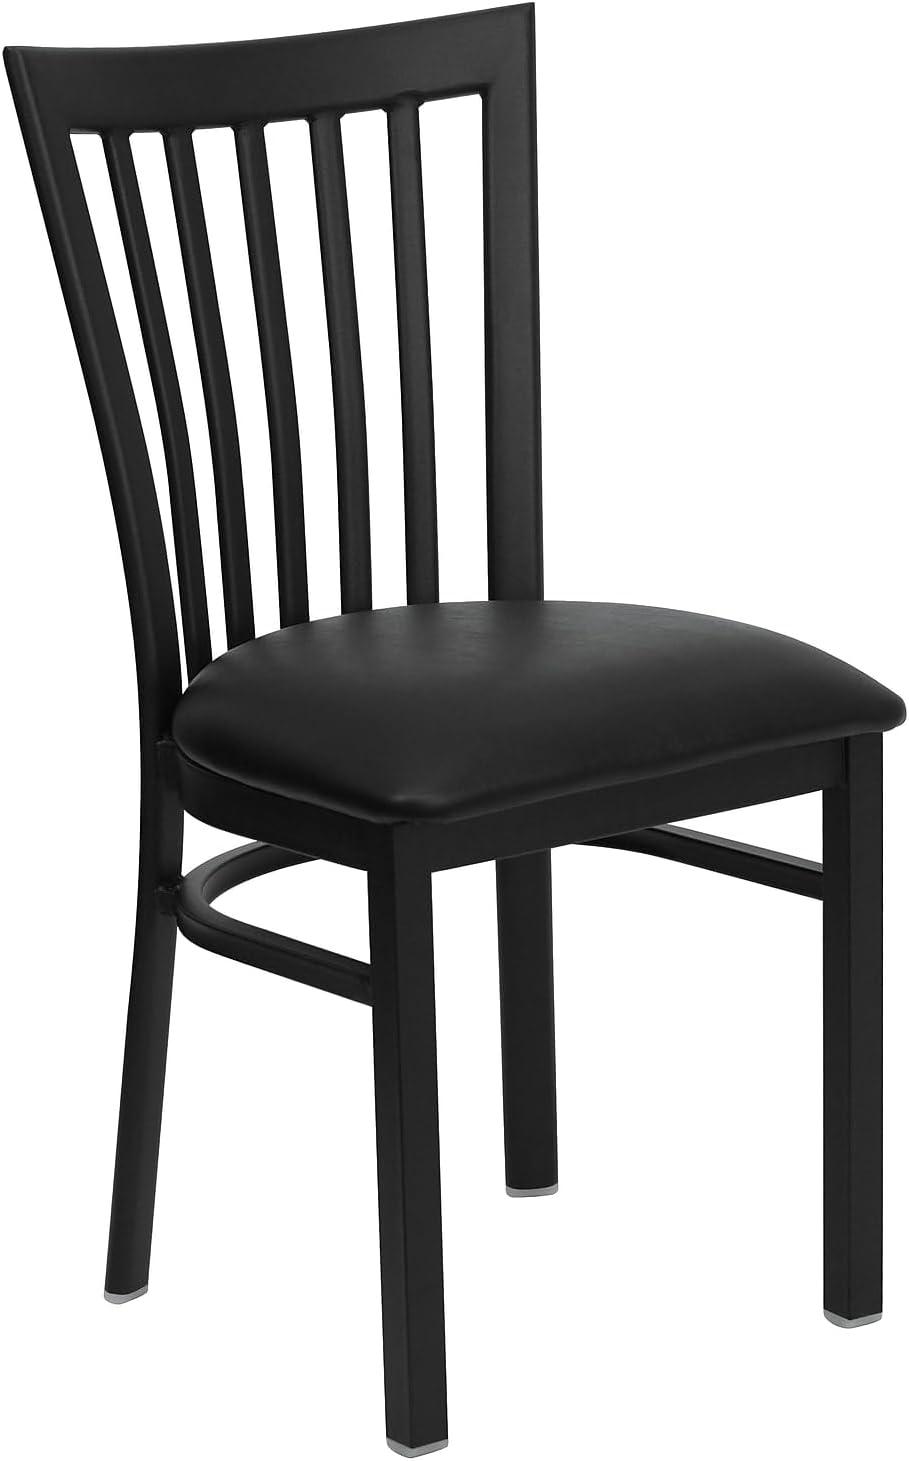 Hercules Series 18.75" Black Metal Restaurant Chair with Vinyl Seat